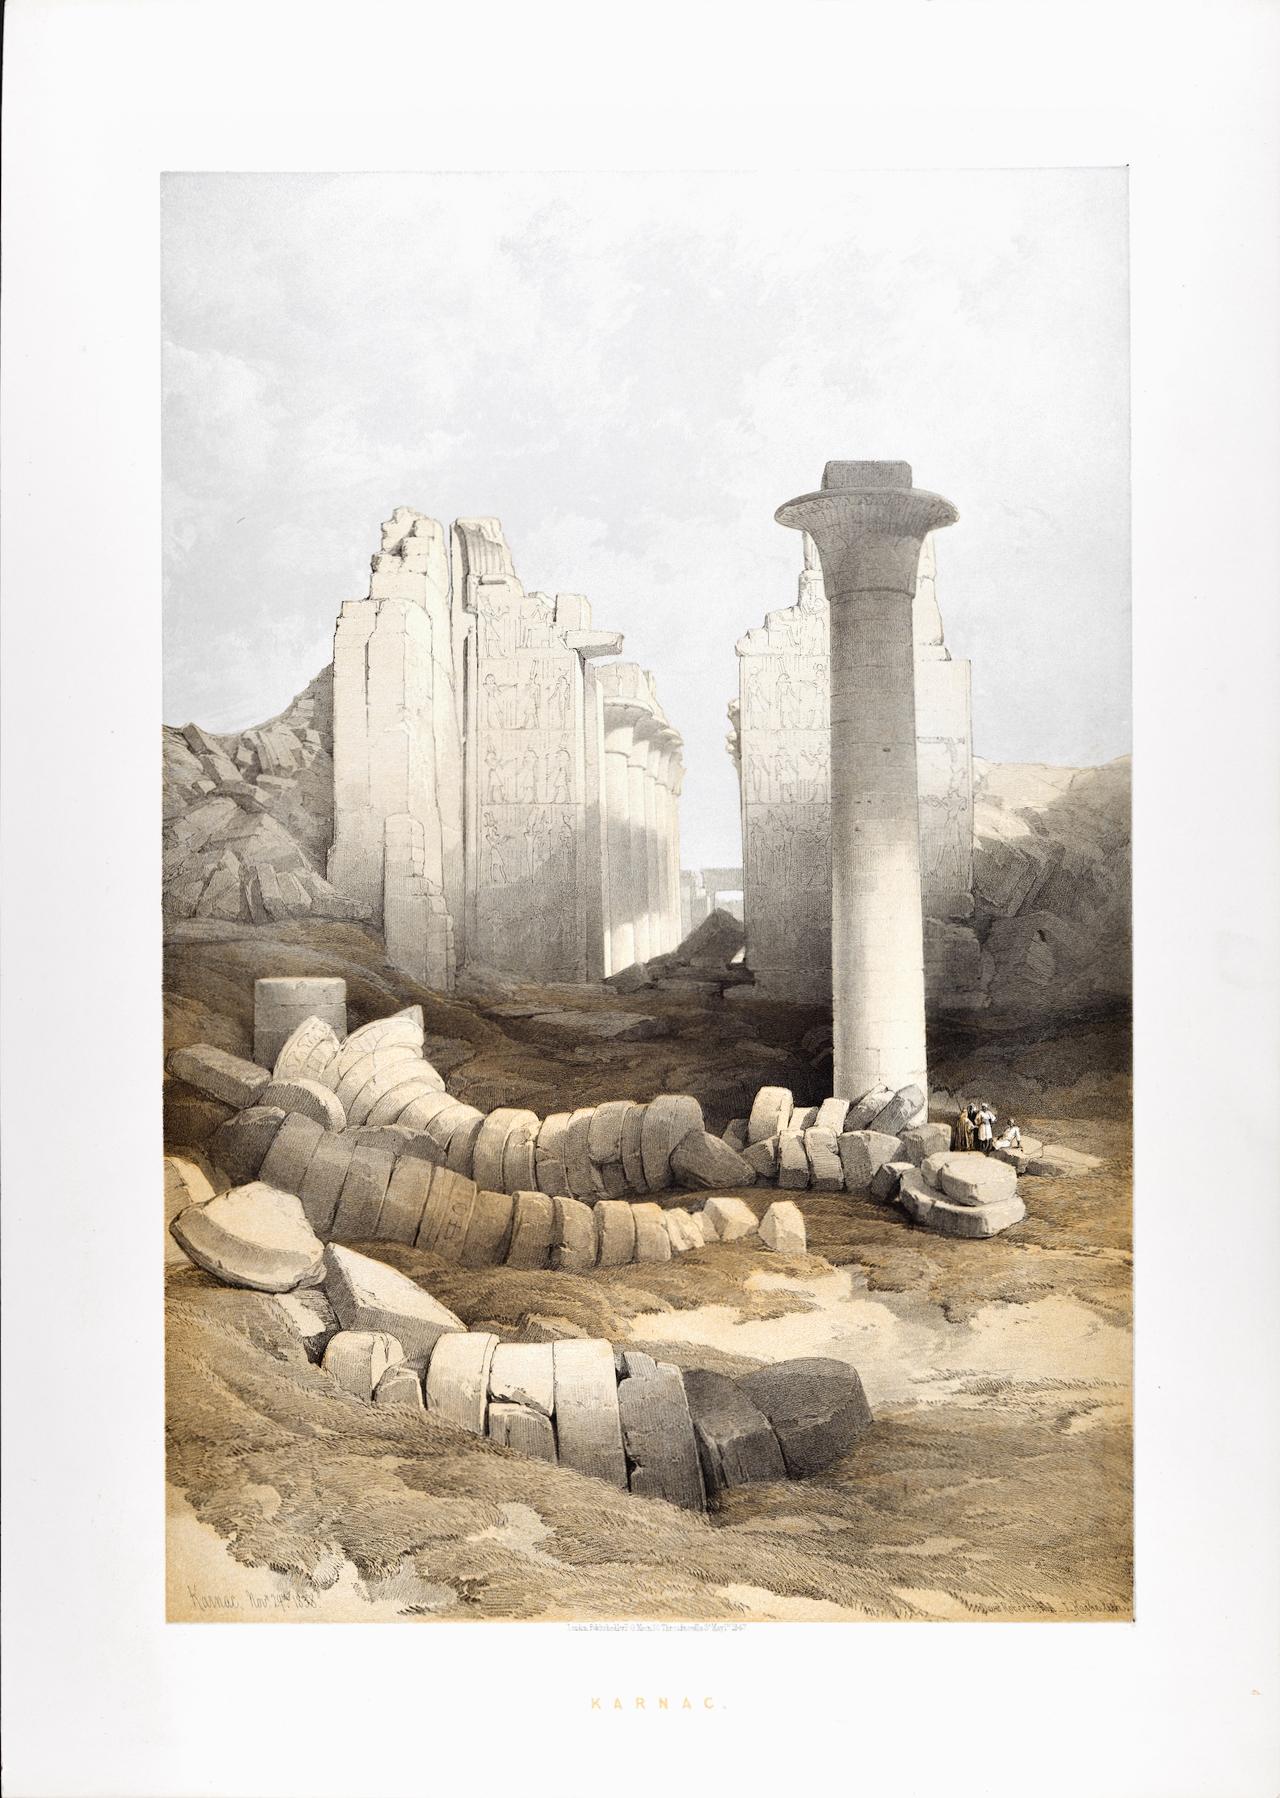 Karnac, 29 novembre 1838 en Égypte : lithographie duotone de David Roberts du 19e siècle